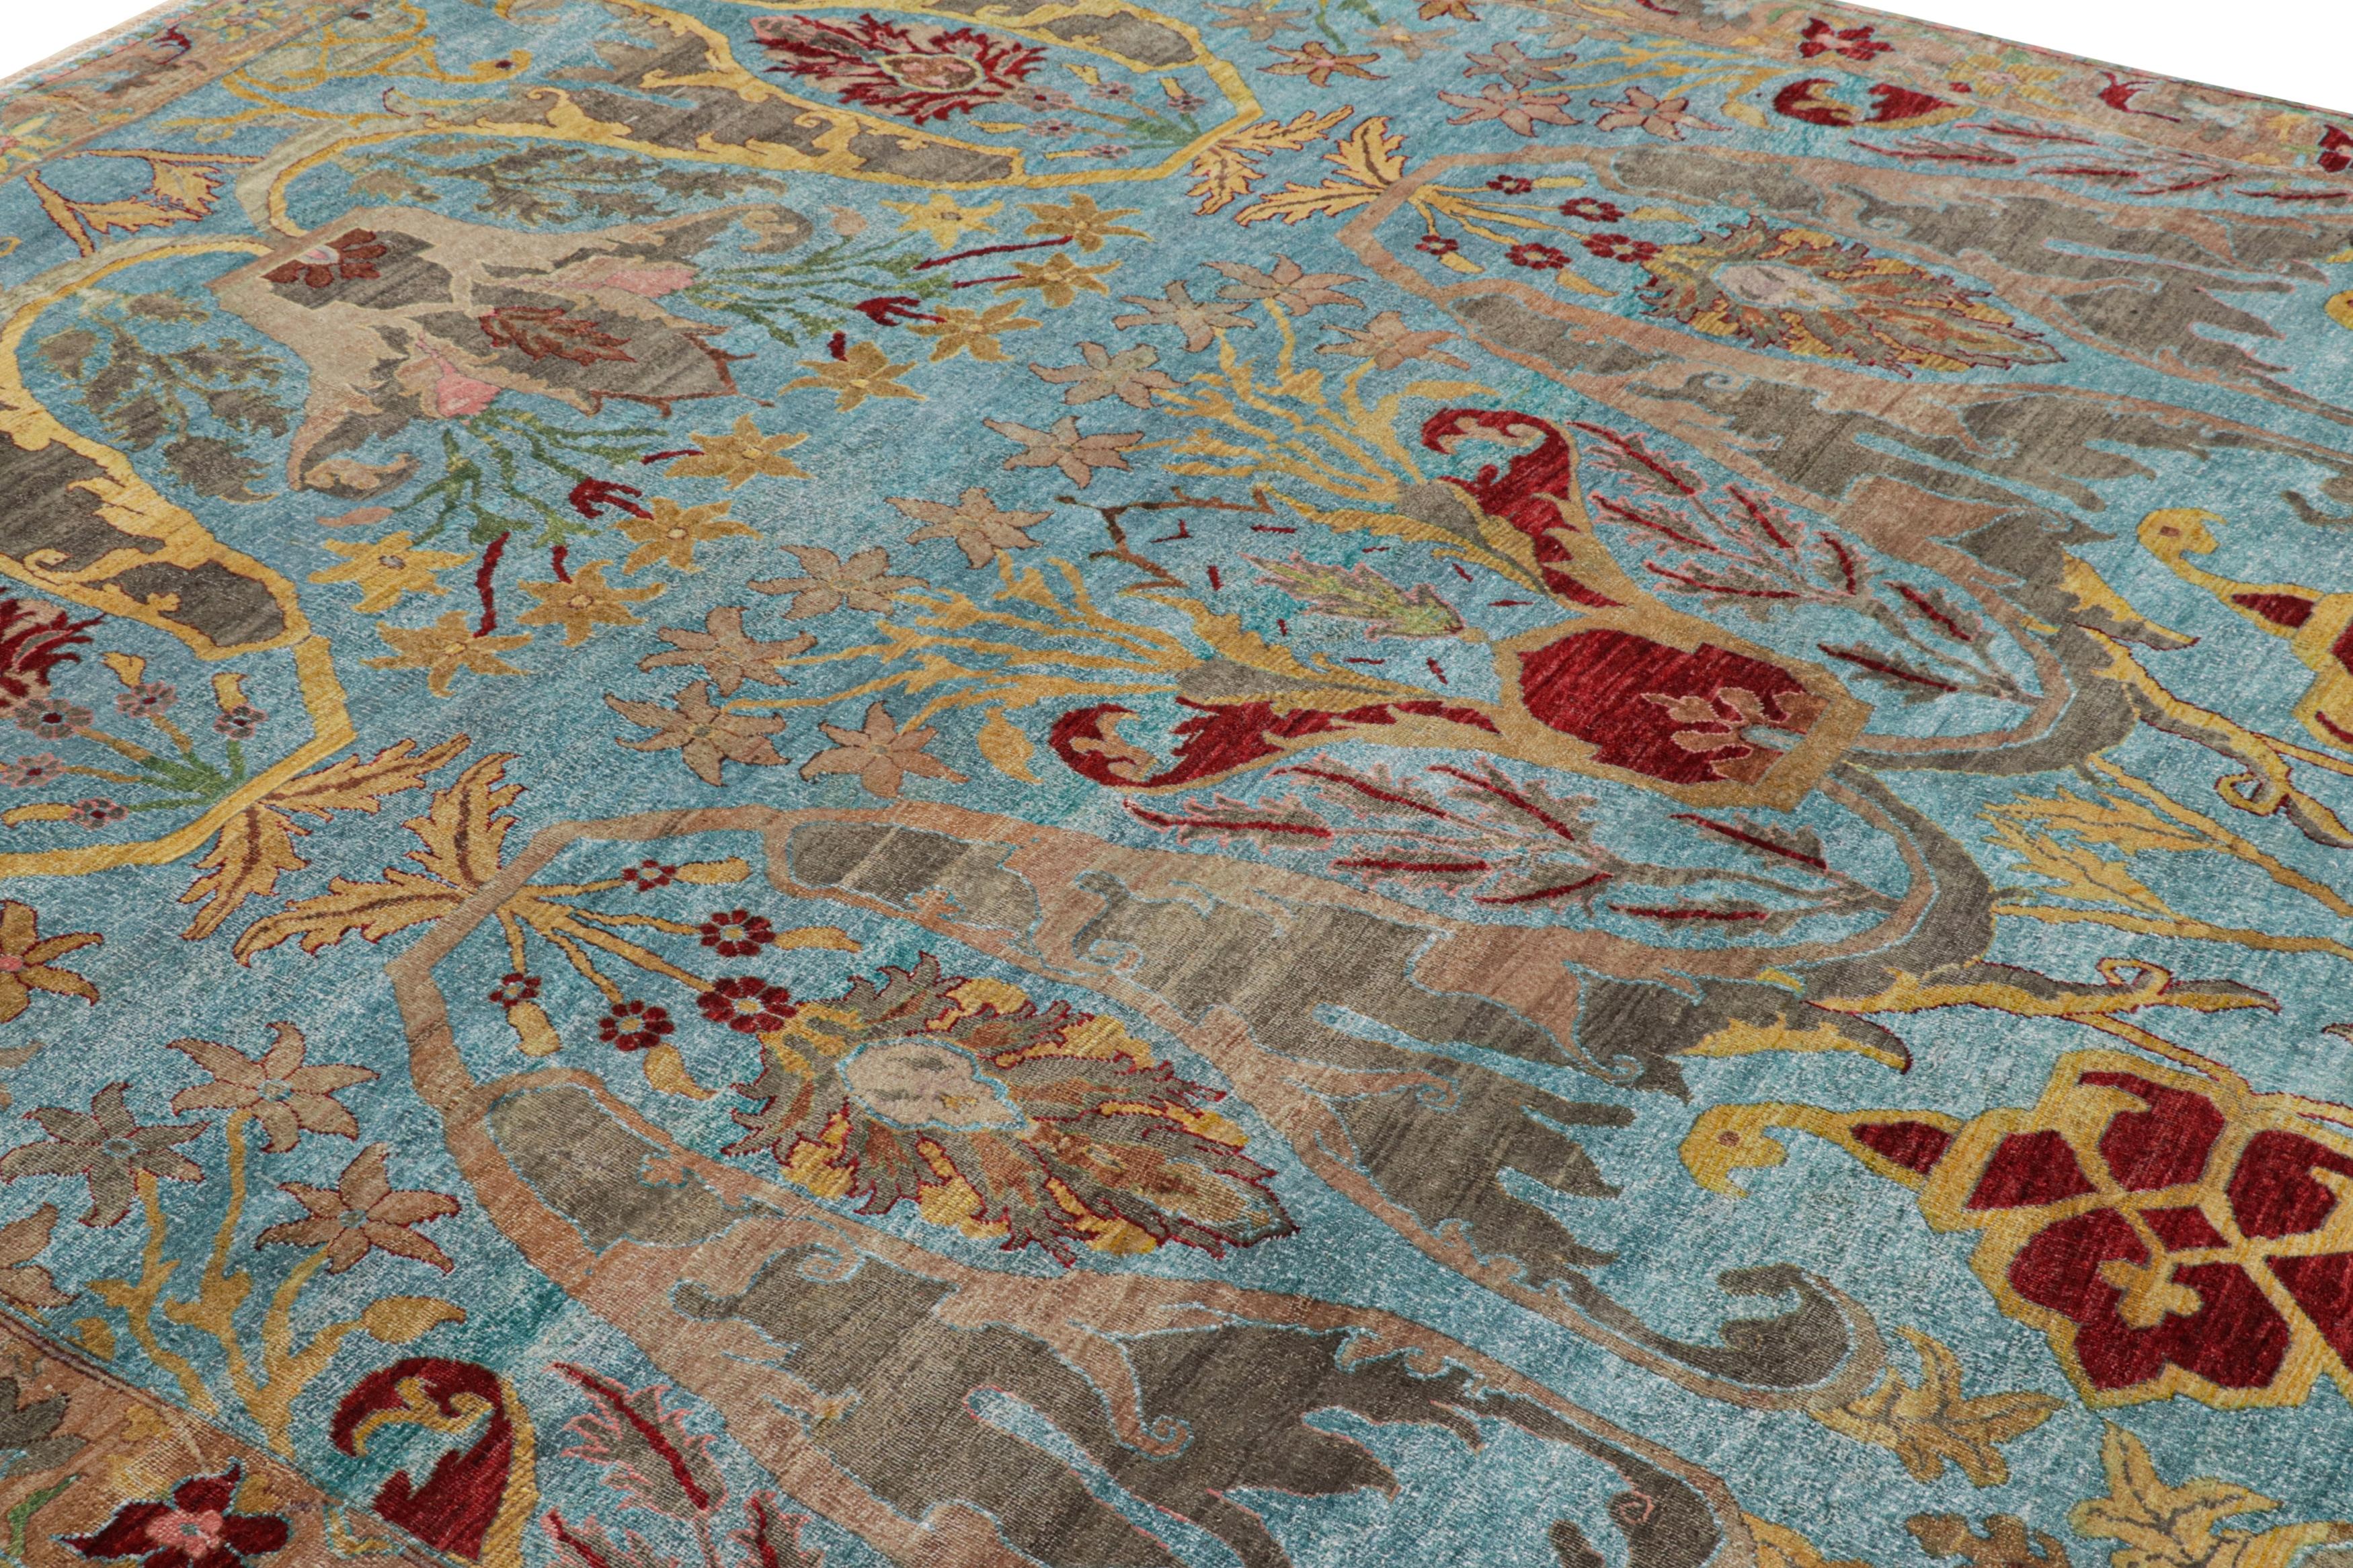 Noué à la main en laine, ce tapis 8x10 fait partie de la collection Modern Classics de Rug & Kilim.

Sur le Design/One :

Les admirateurs de l'artisanat remarqueront peut-être une inspiration des tapis Oushak dans ce design contemporain. Bien que sa